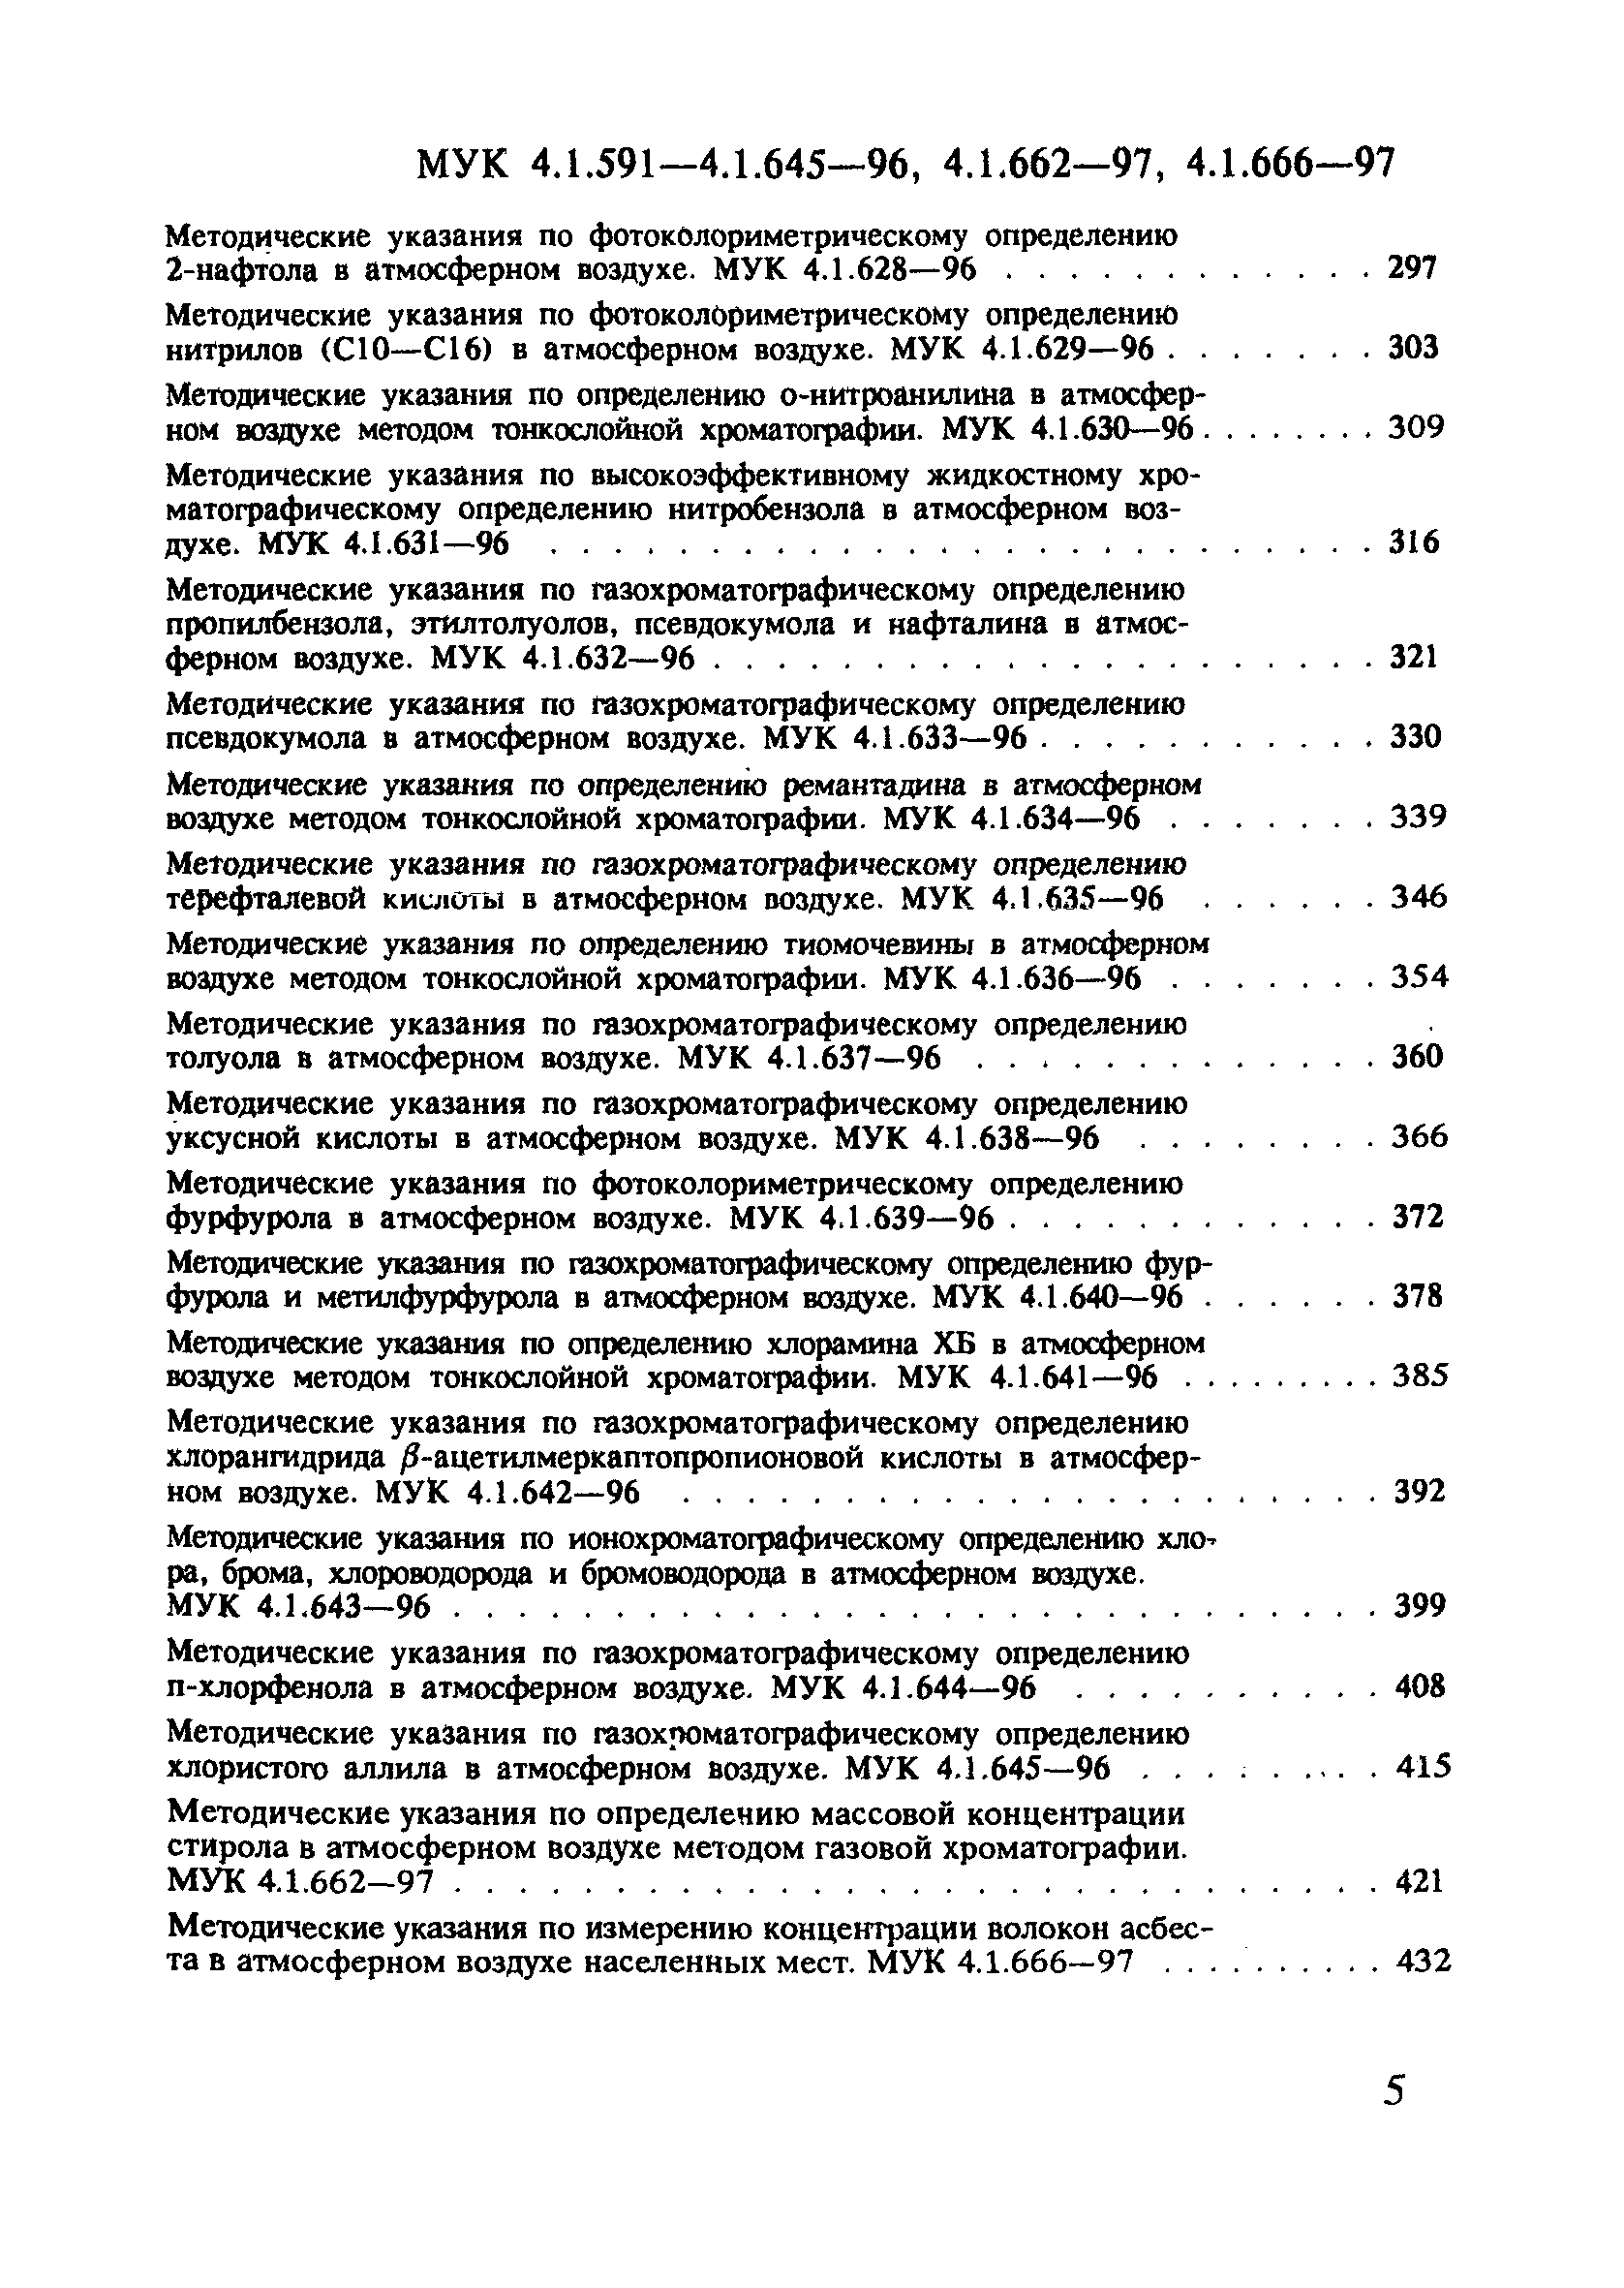 МУК 4.1.603-96